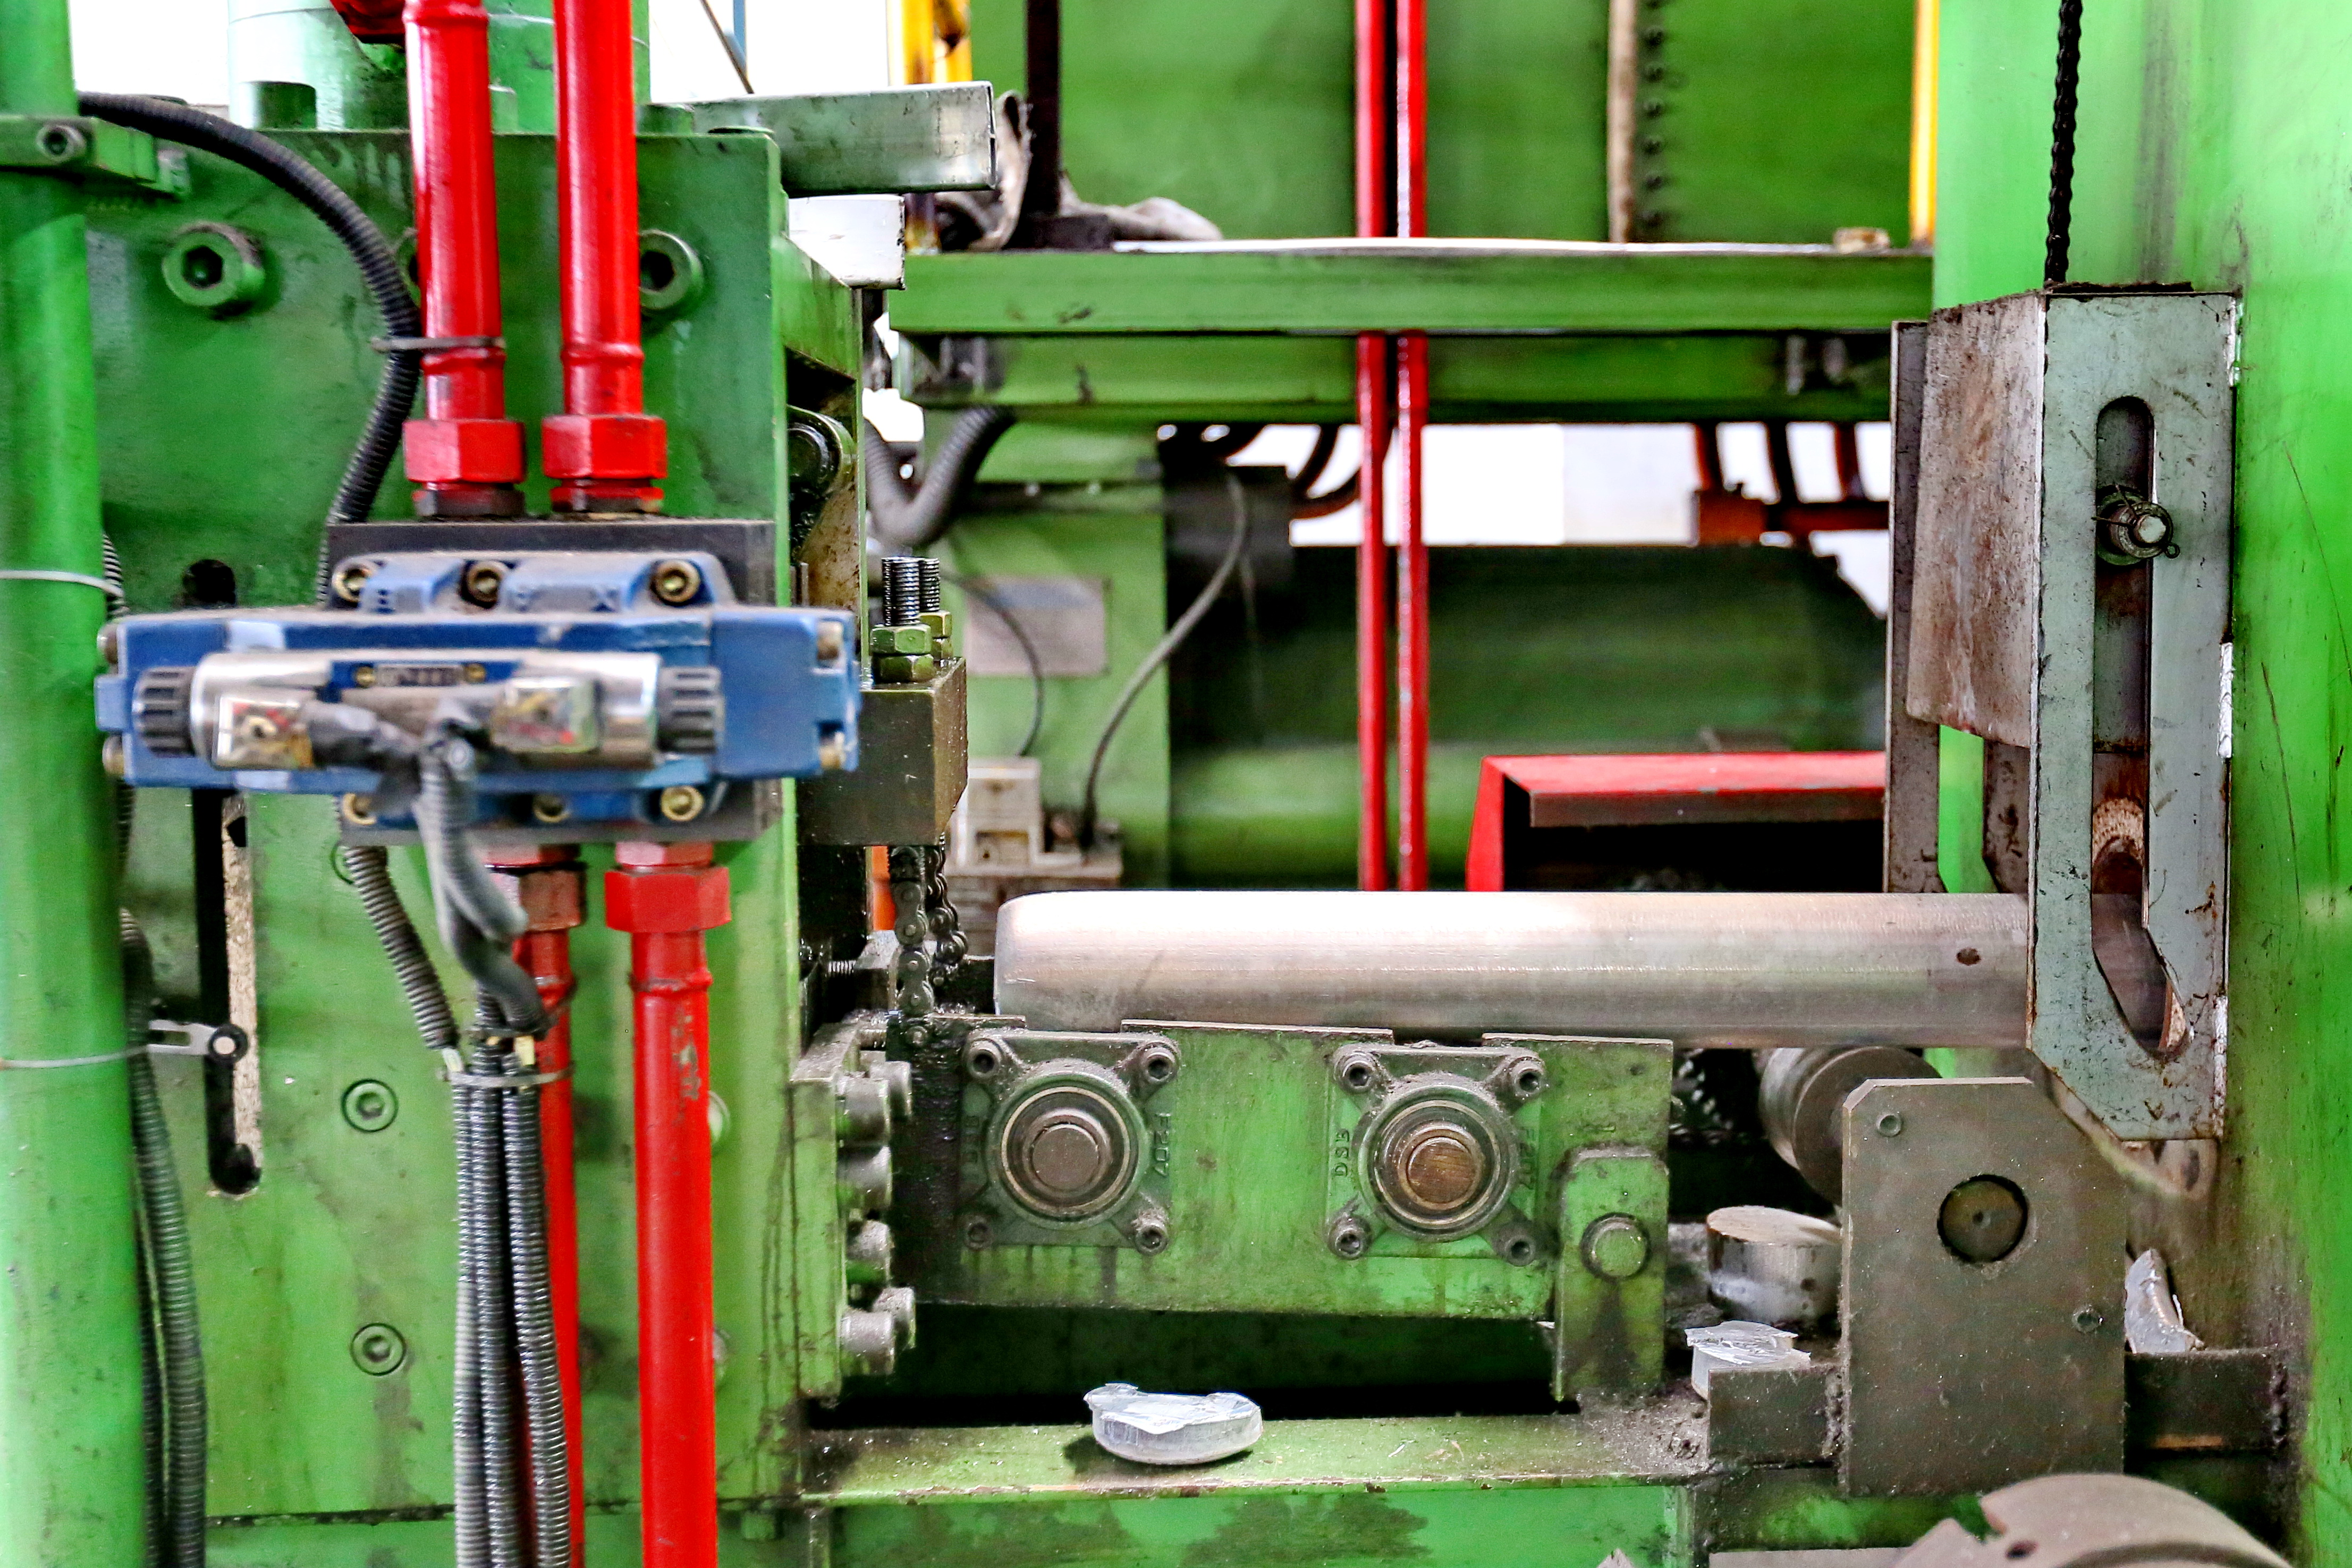 Hiệu quả sản xuất của nhà máy gia công nhôm định hình Chiết Giang, nhà sản xuất chuyên nghiệp các loại hồ sơ có hình dạng đặc biệt, gia công nhôm định hình cao? Làm thế nào để đảm bảo chất lượng sử dụng?